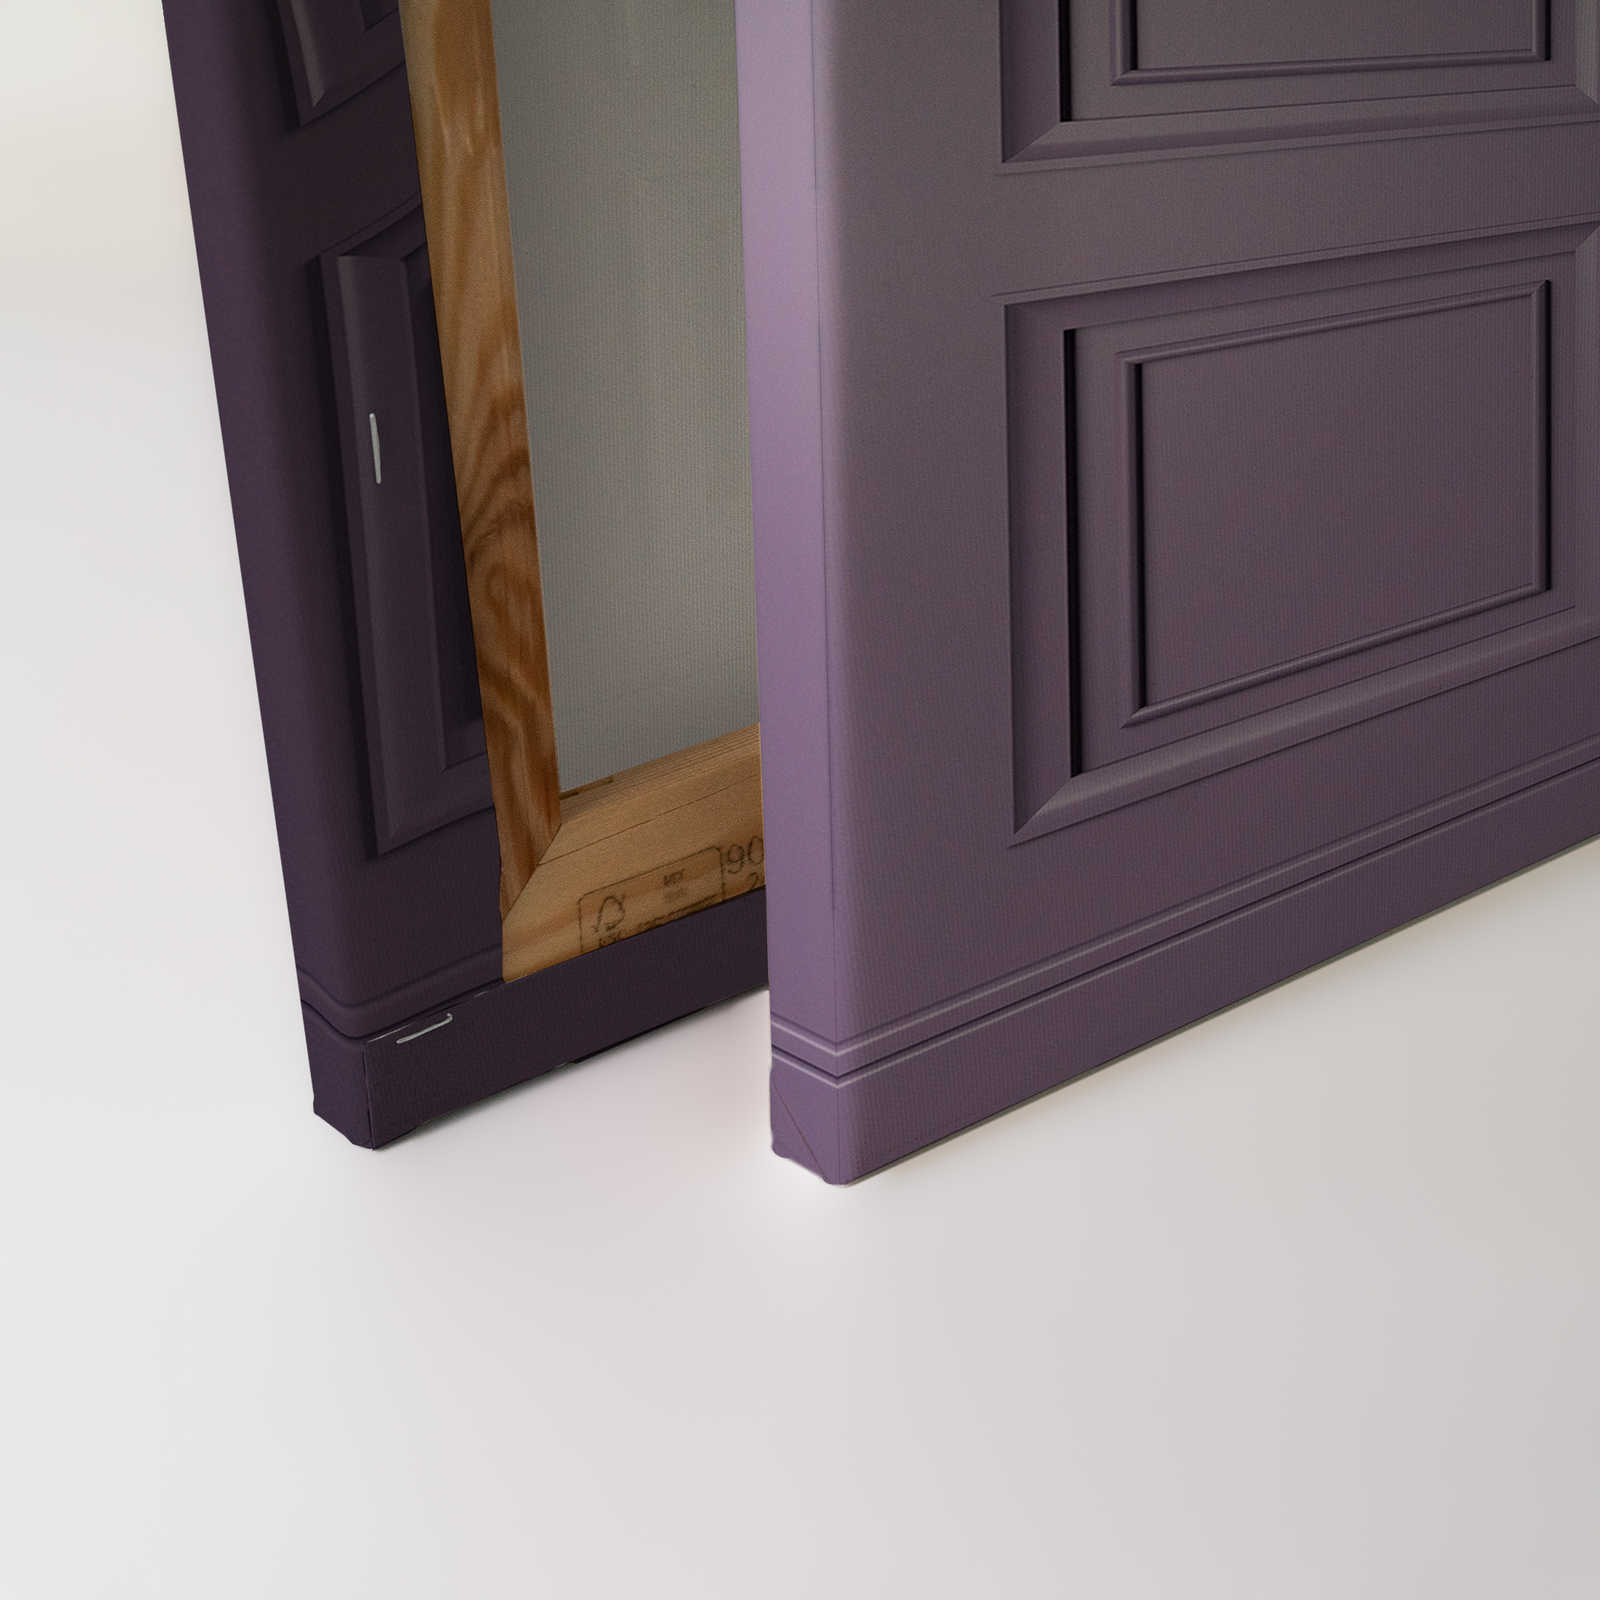             Kensington 3 - 3D toile lambris bois violet foncé, violet - 1,20 m x 0,80 m
        